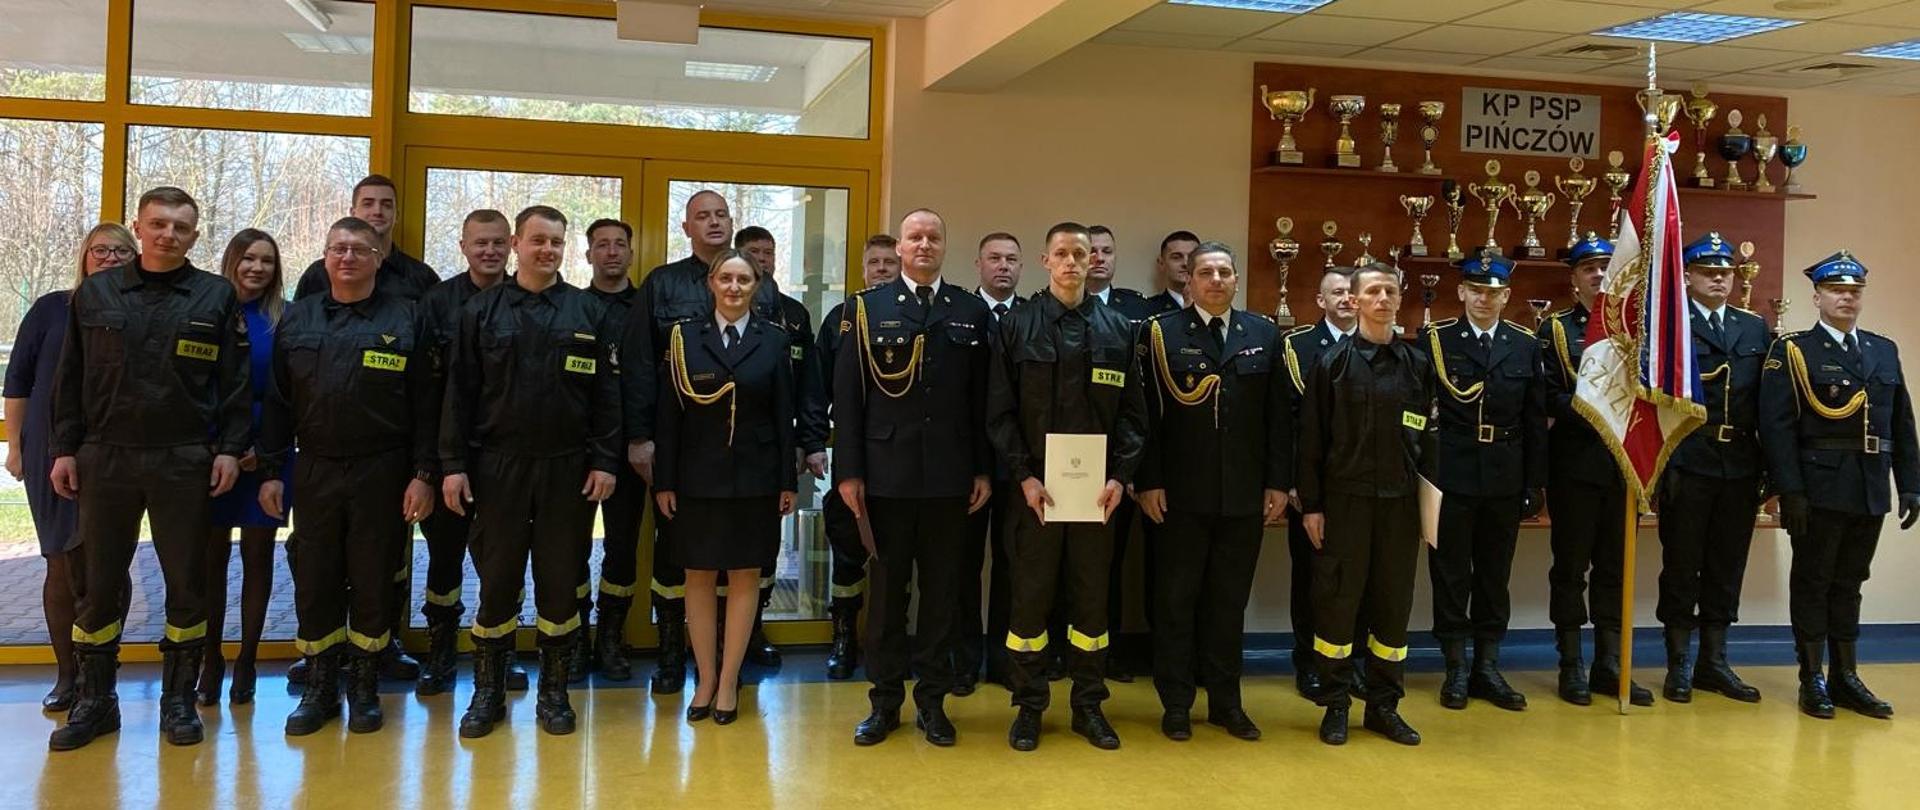 Strażacy KP PSP w Pińczowie podczas uroczystości ślubowania